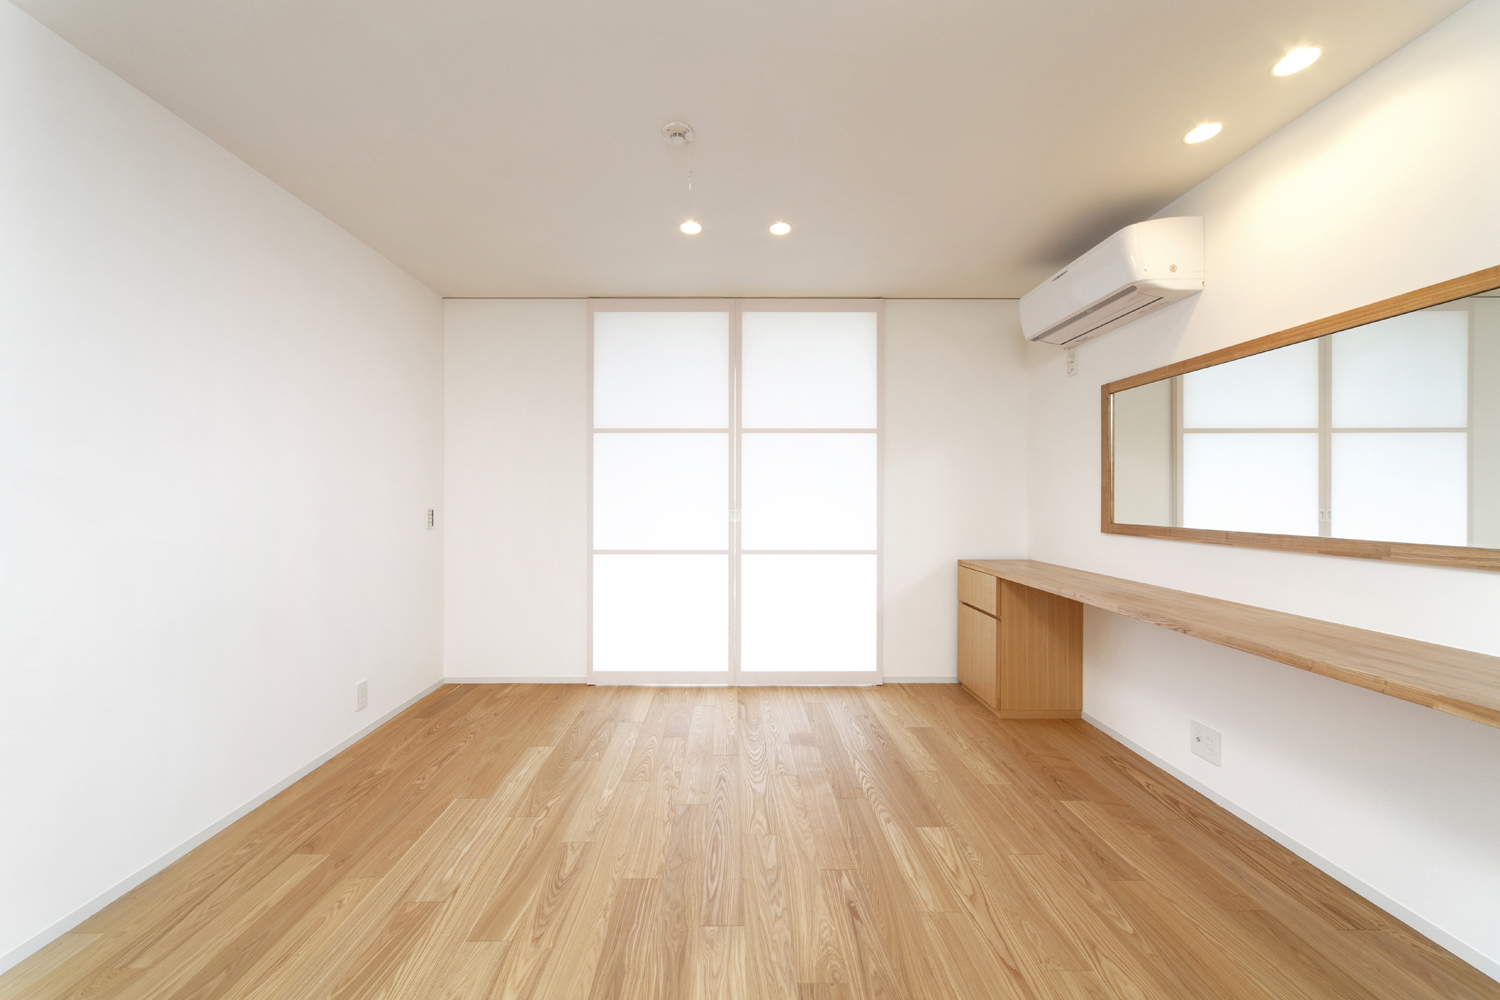 建具に和紙を使用し、縁側の大きい窓から柔らかい優しい光が入る寝室